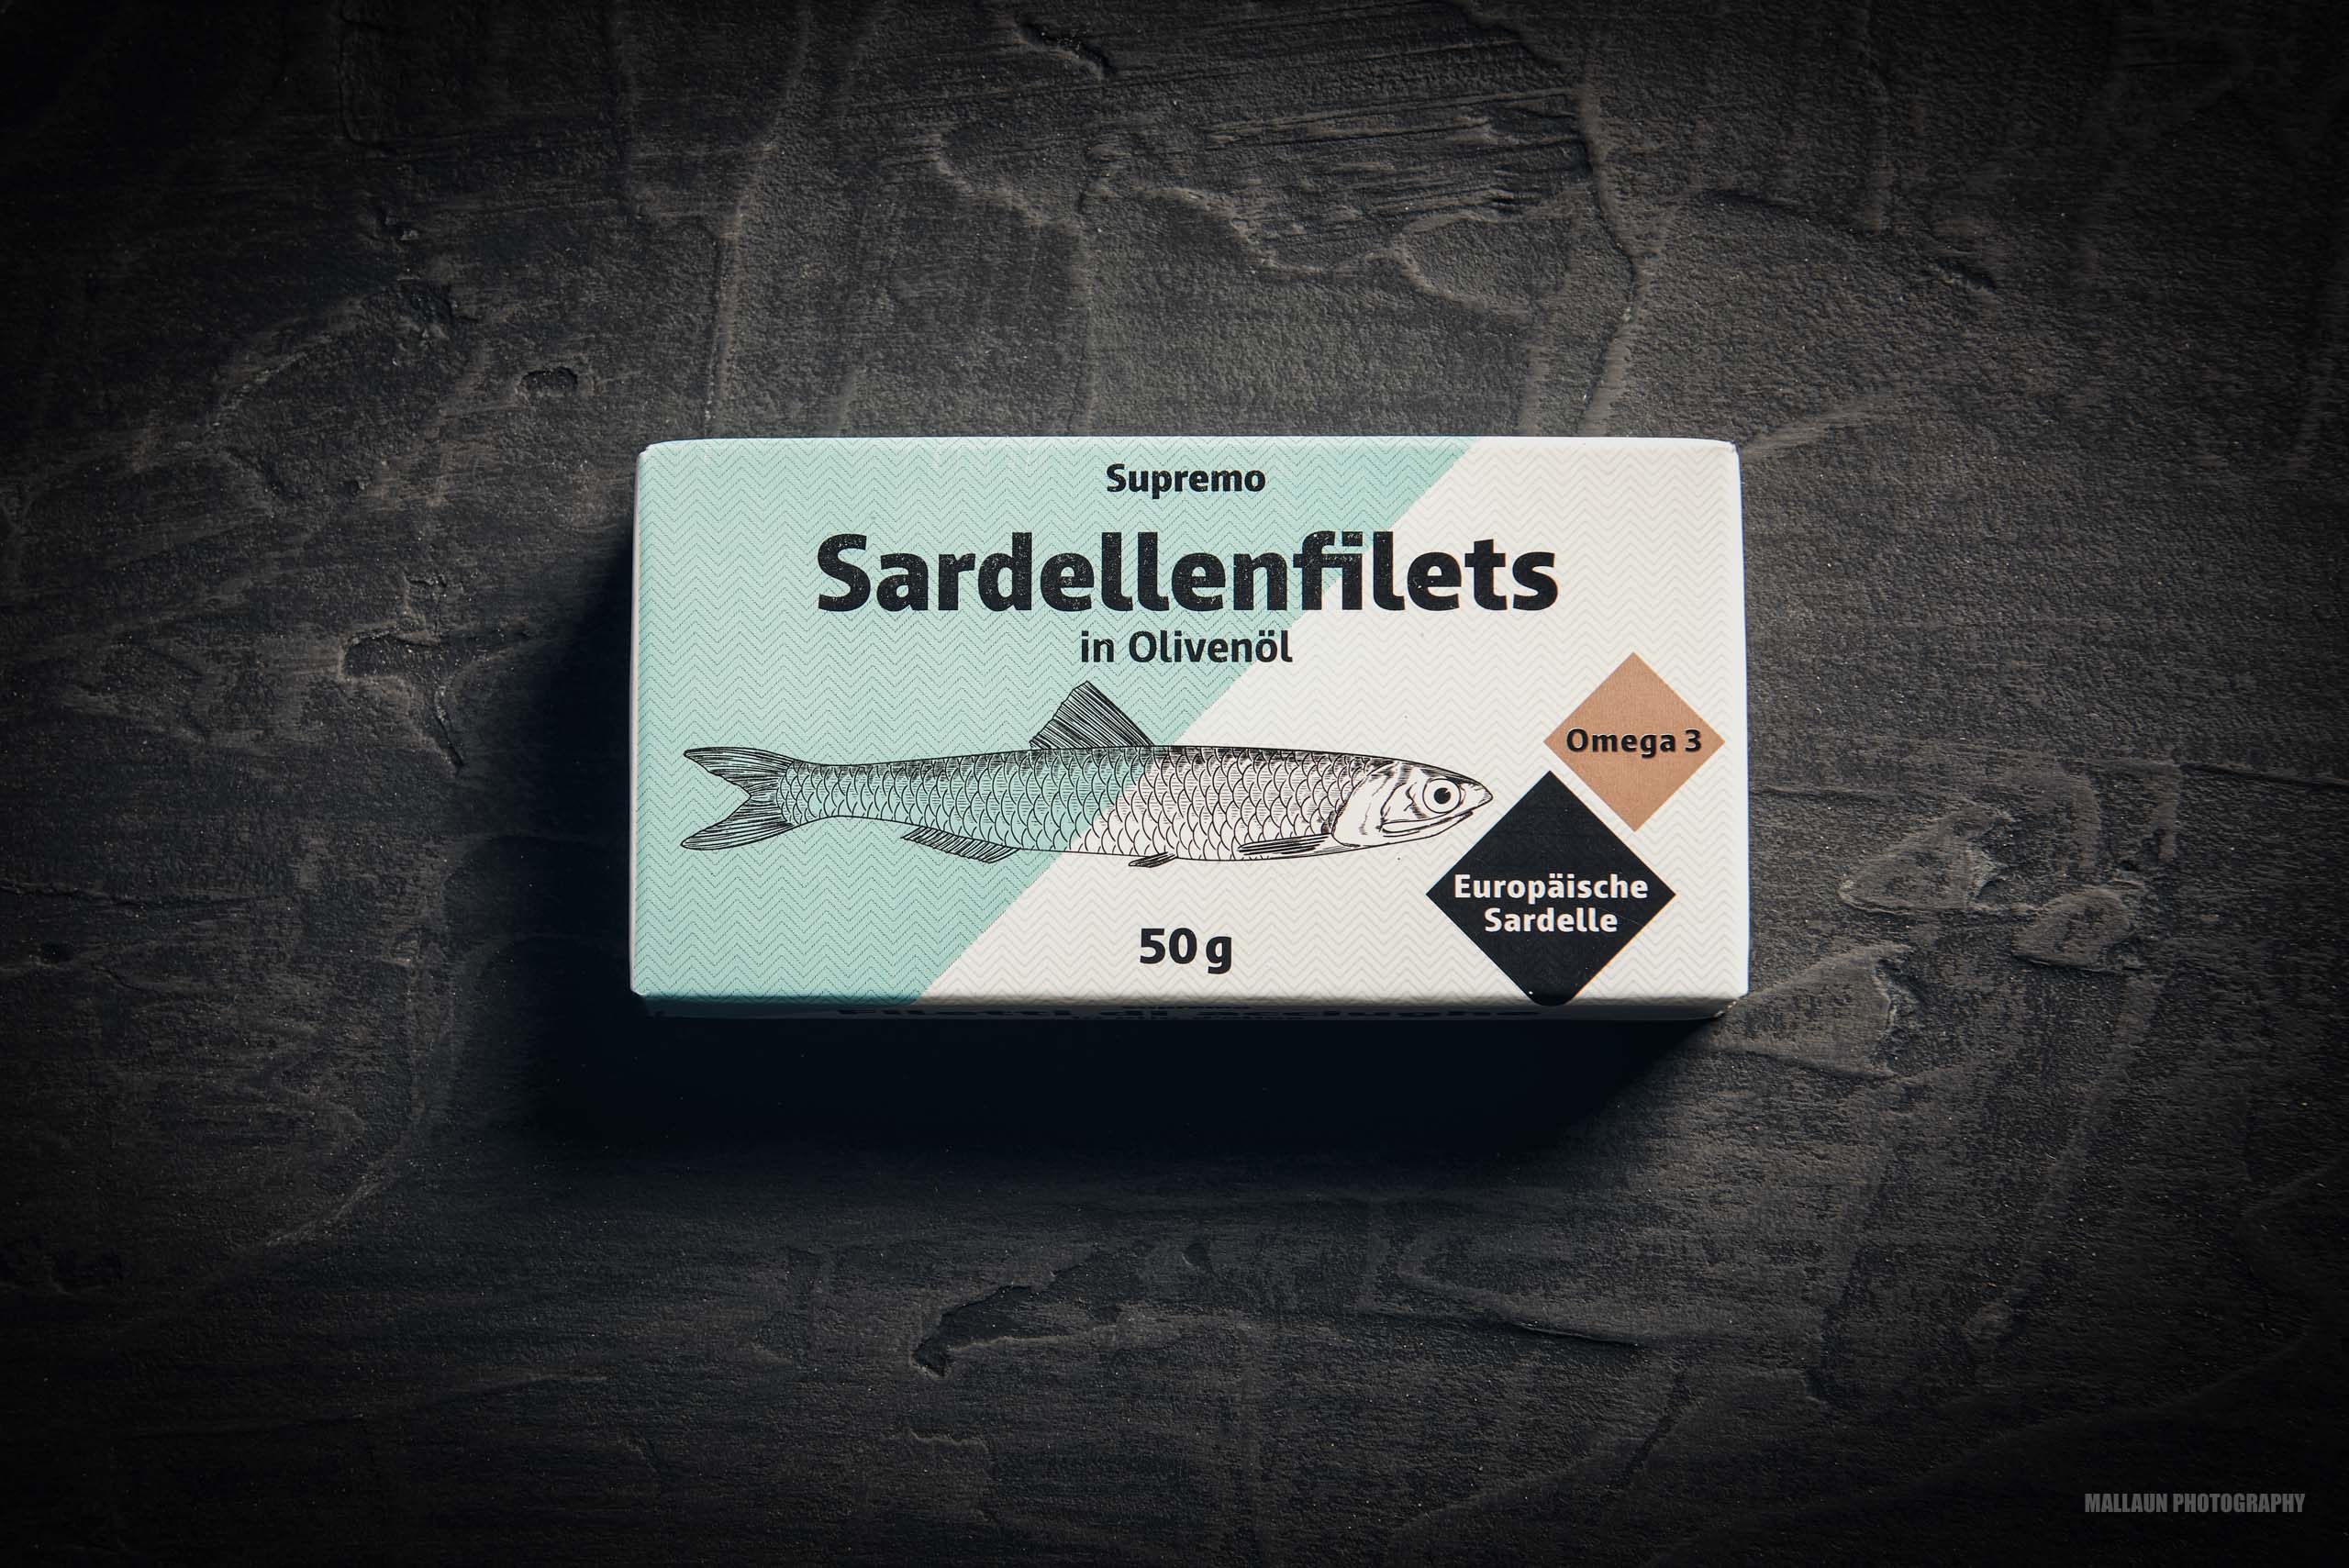 Sardellen-Filet auf Teller - Dark Food Photography